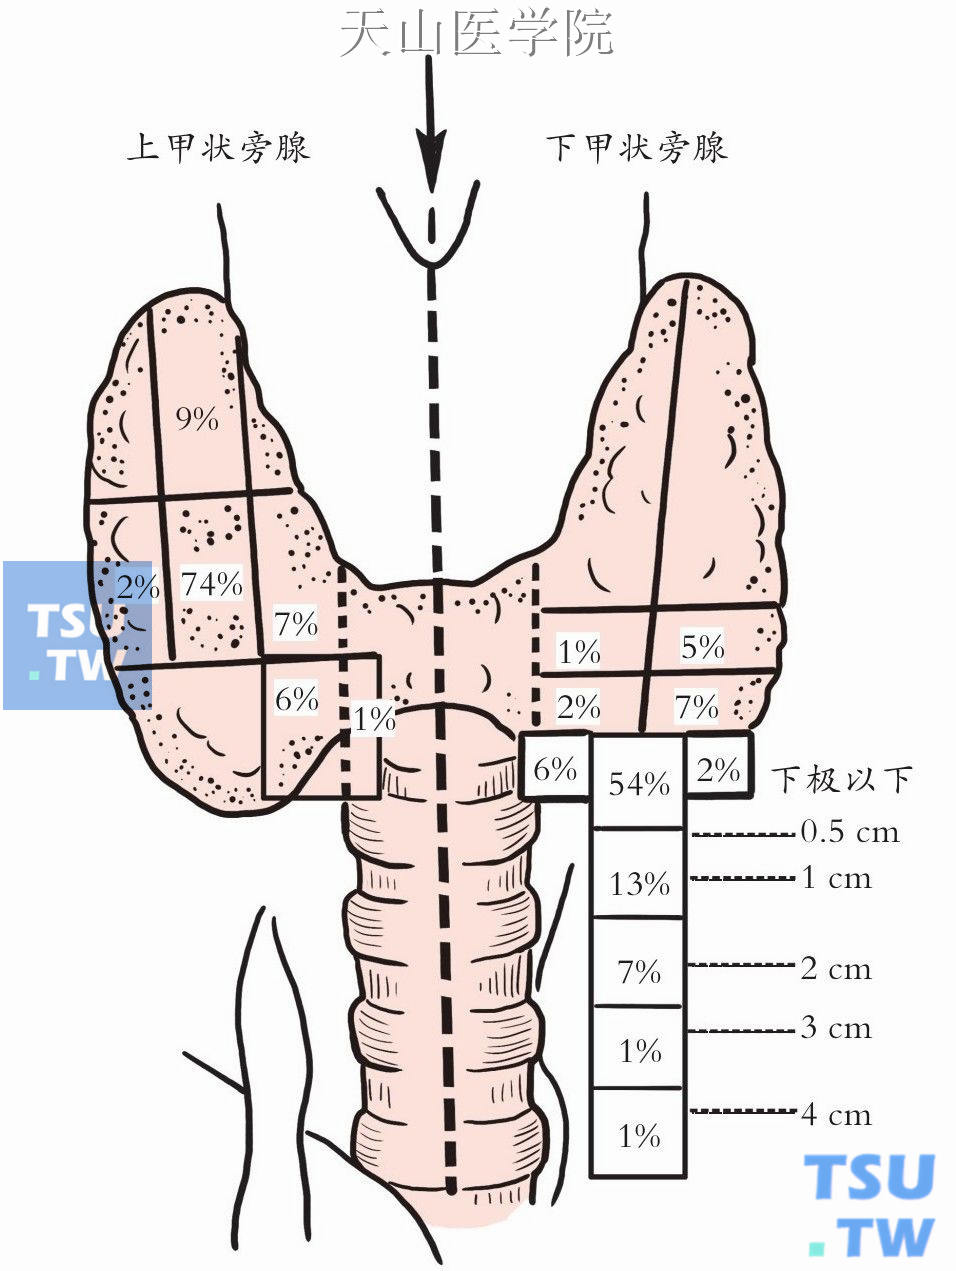 下甲状旁腺分布范围更广泛，多数邻近甲状腺下极